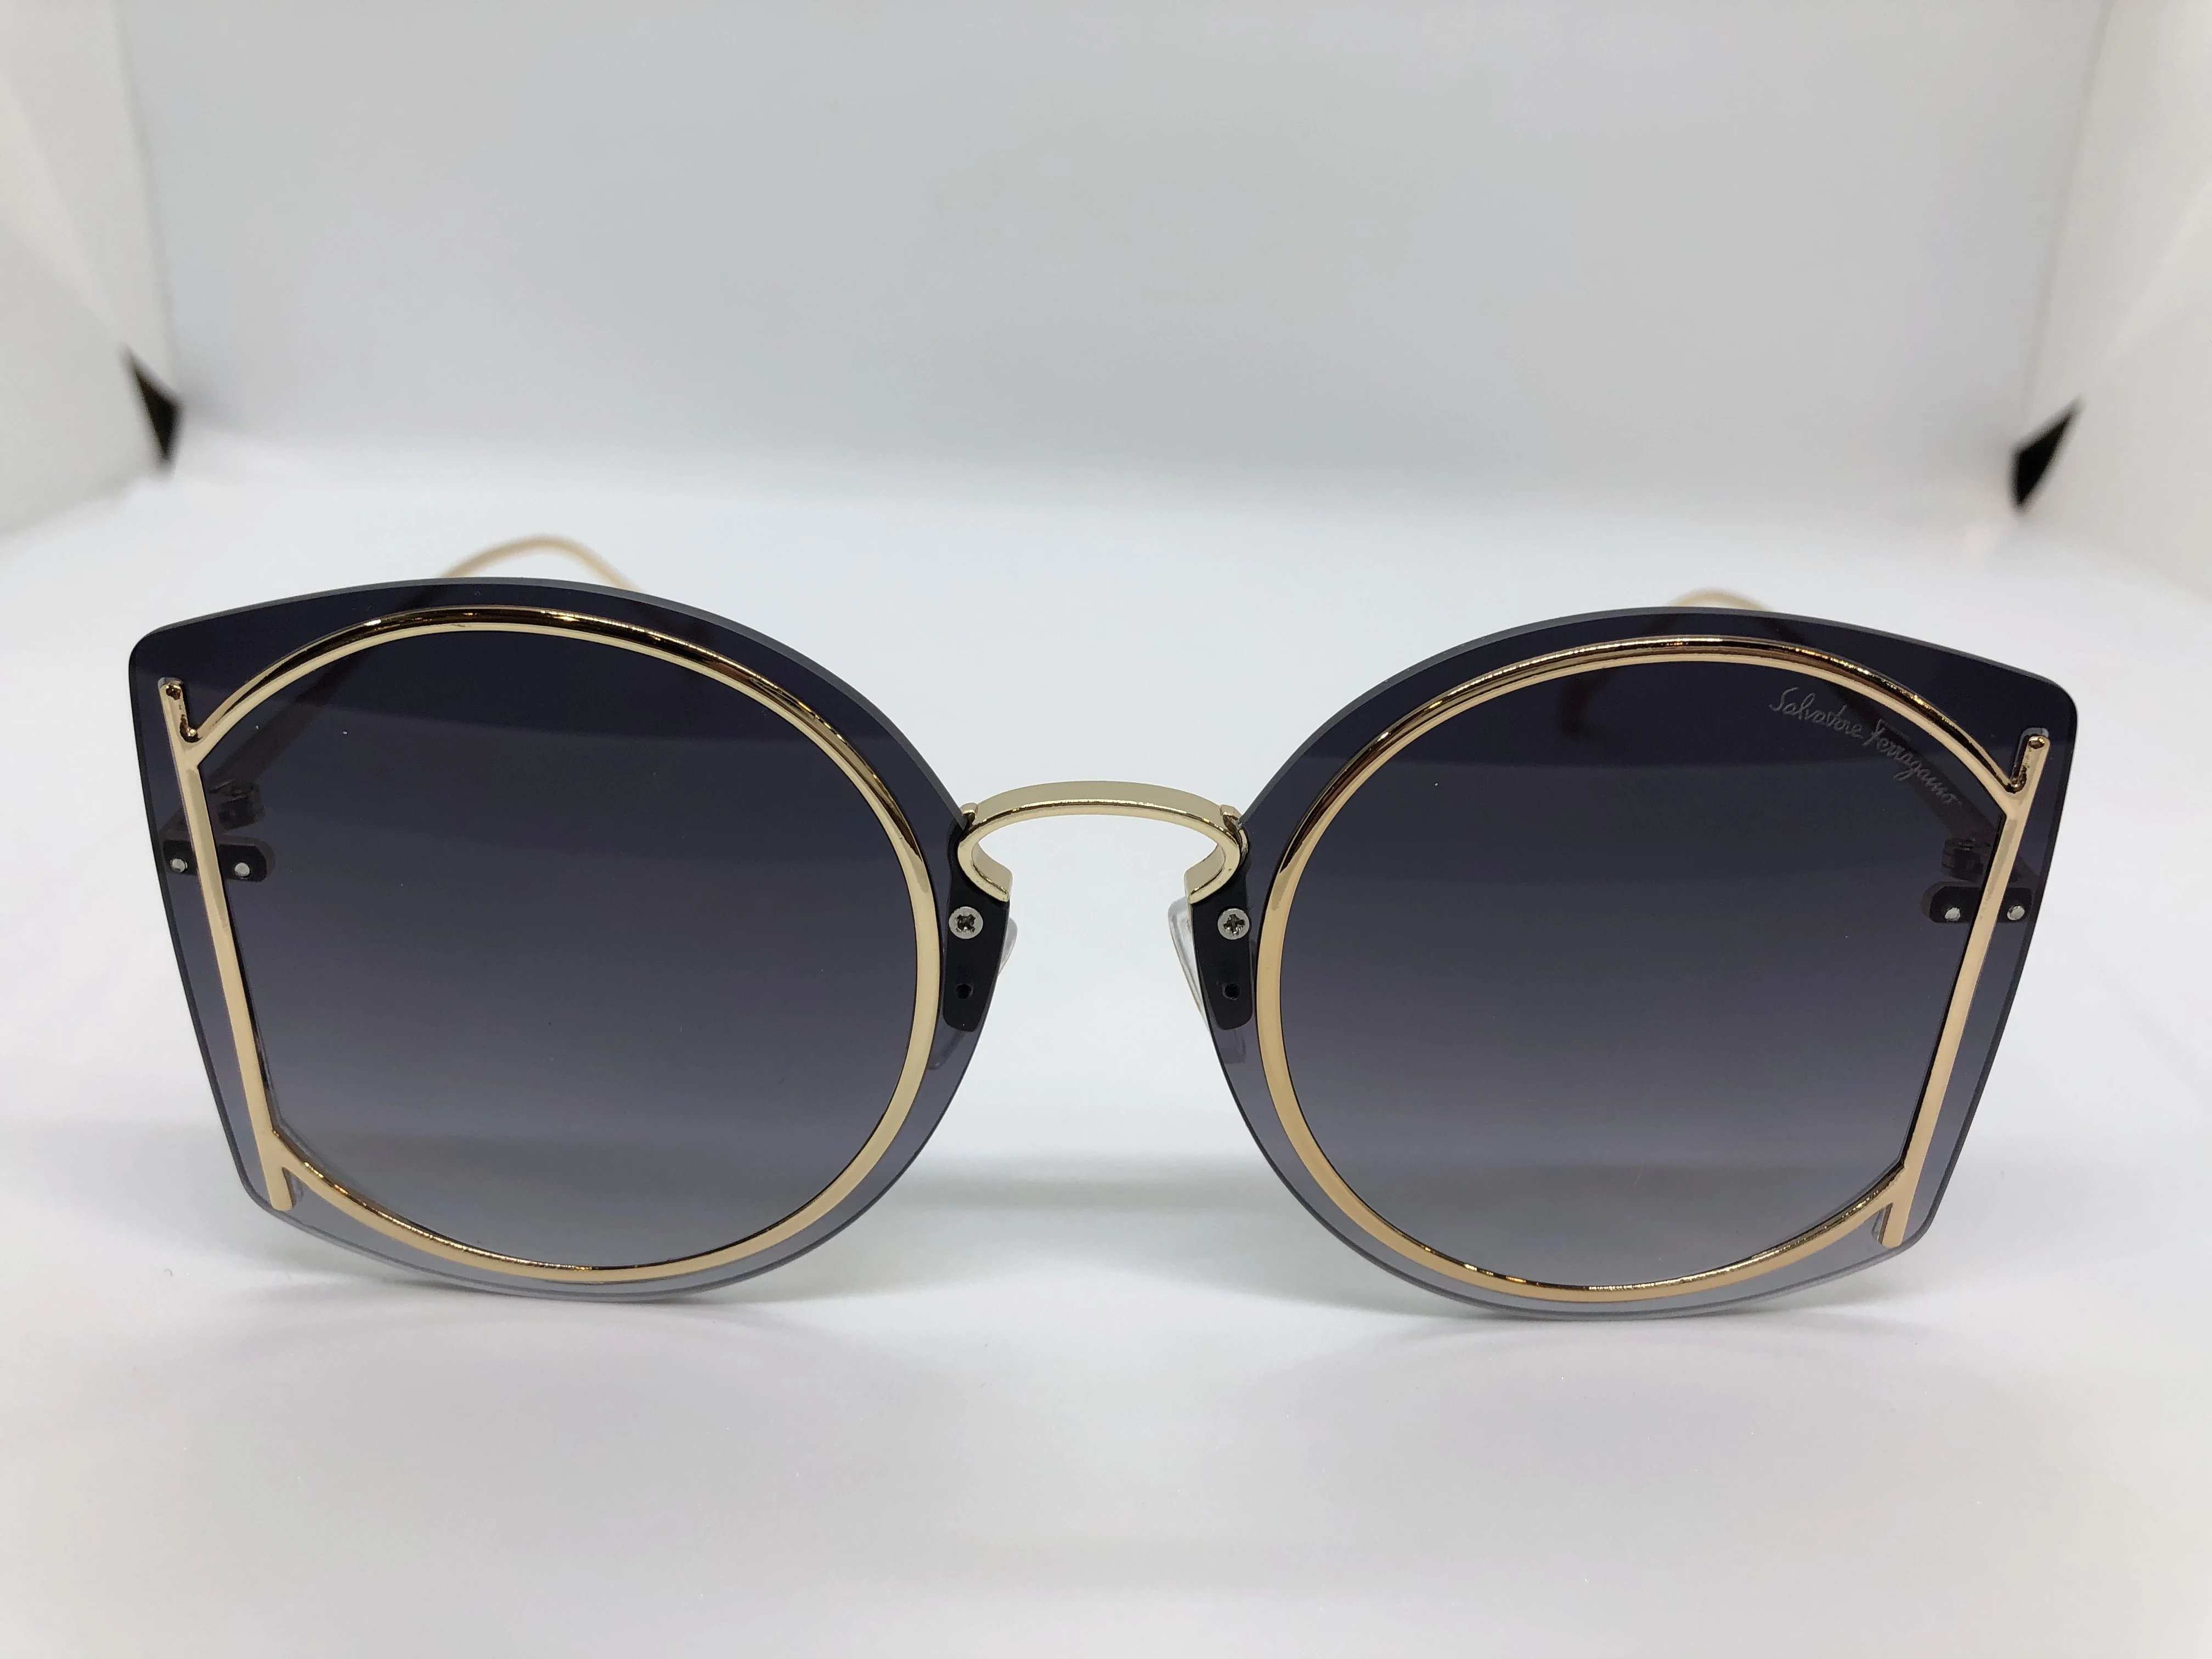 نظارة شمسية - من سلفاتوري فيراغامو -بدون اطار - وعدسات كحلي شفاف - وزراع ذهبي معدن - اطار منفصل للعدسات معدن ذهبي - حريمي